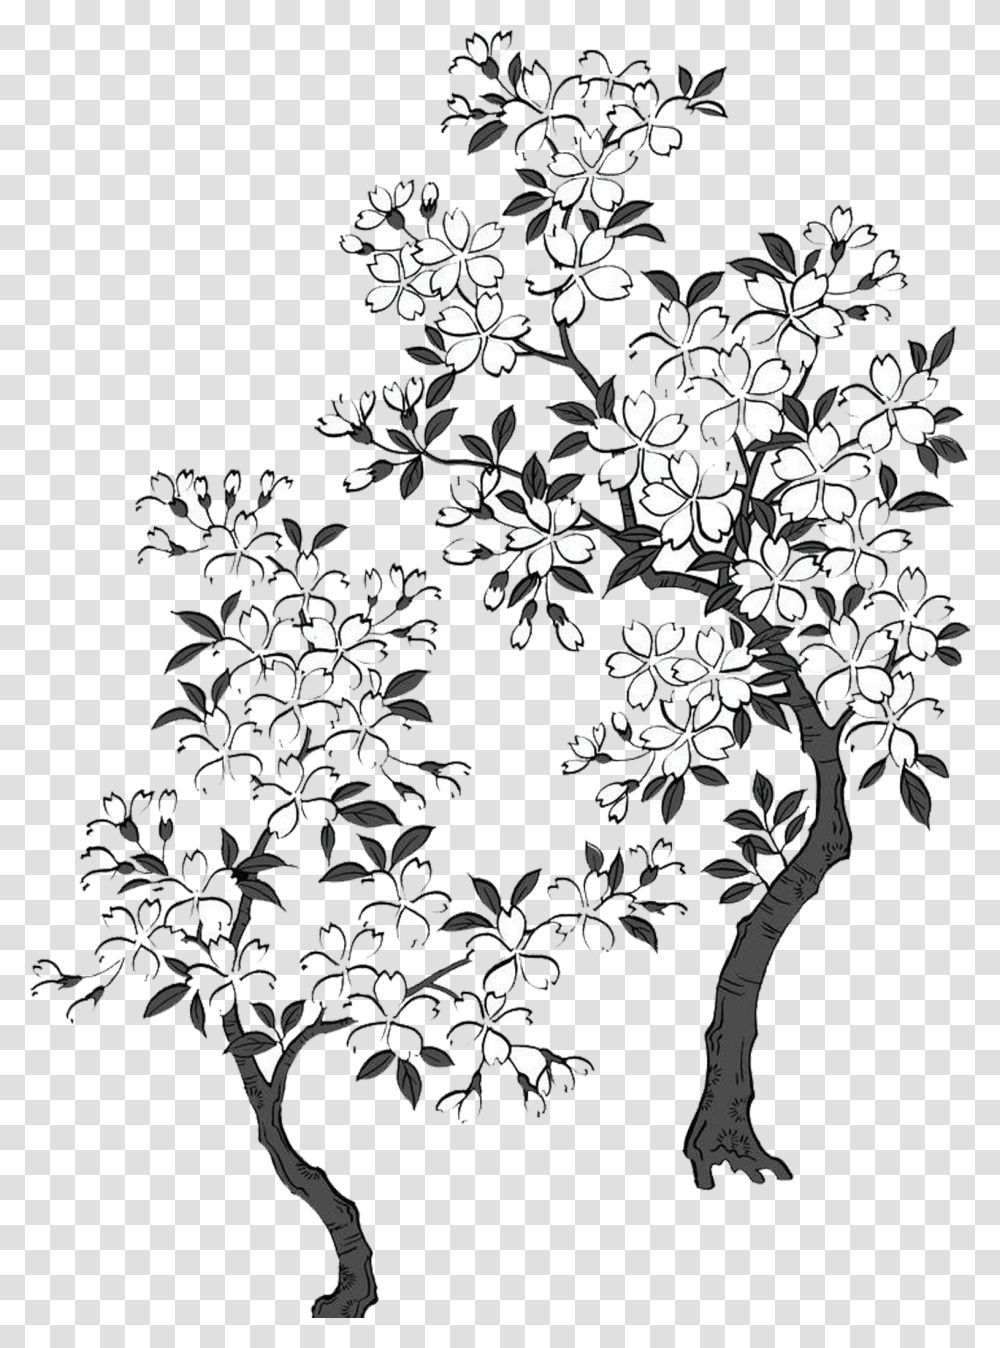 Sakura Tree & Clipart Free Download Ywd White Sakura Tree Art, Graphics, Floral Design, Pattern, Stencil Transparent Png